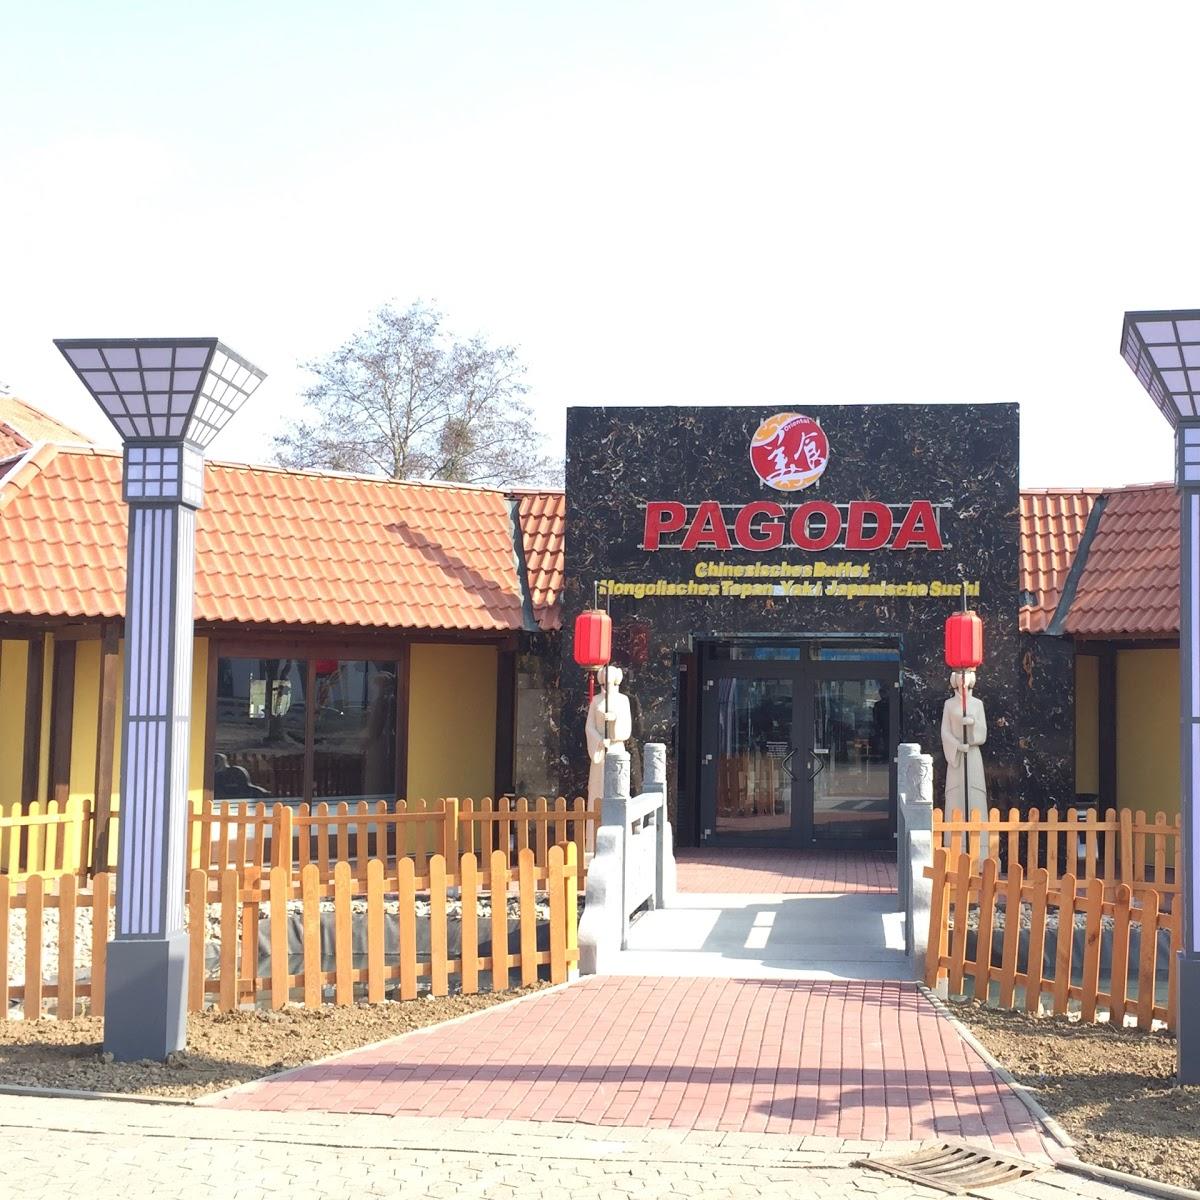 Restaurant "Chinarestaurant Pagoda" in  Göttingen